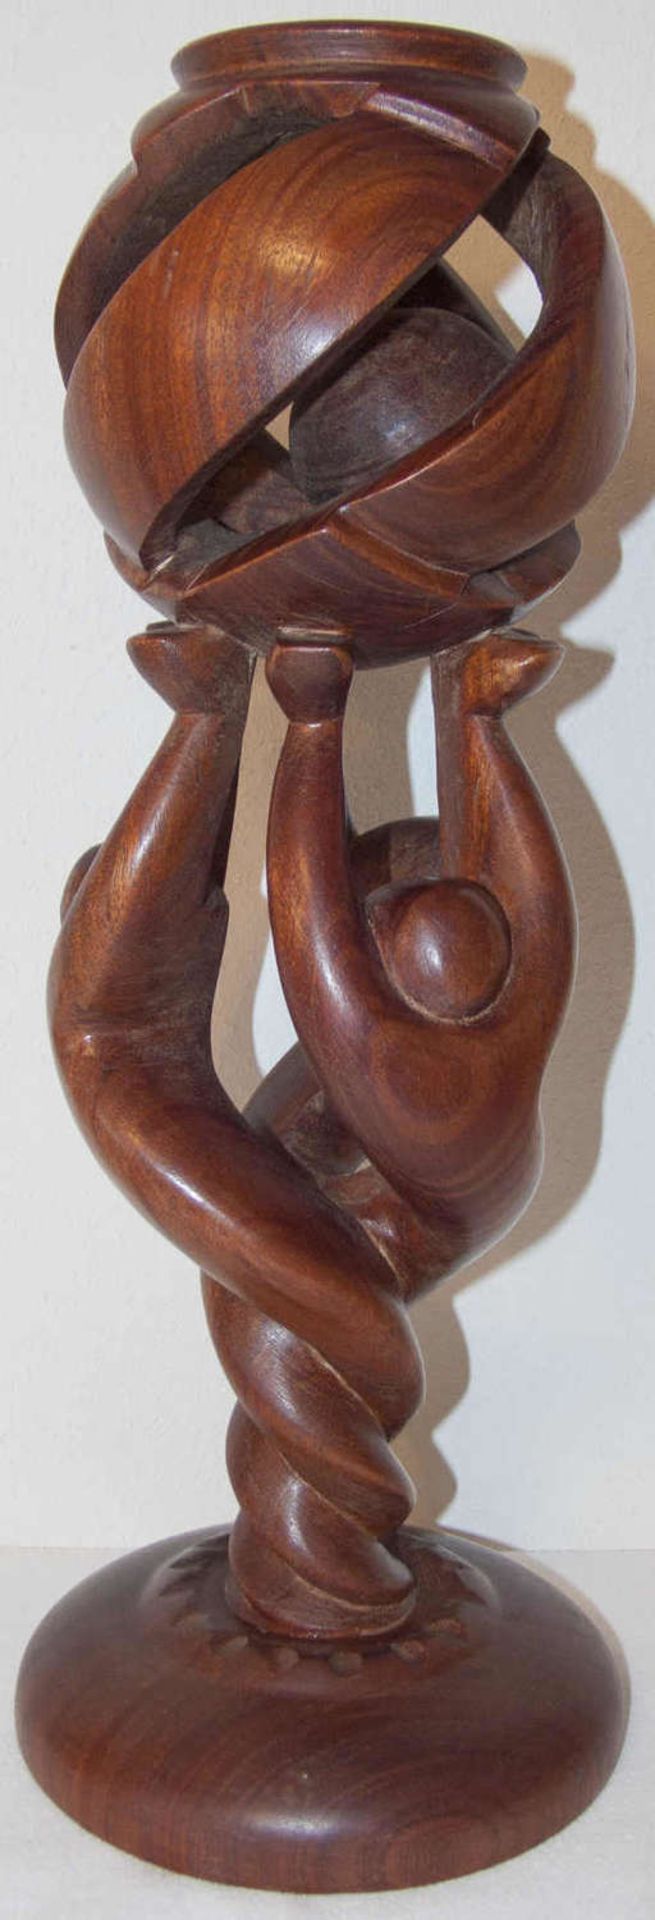 Holz - Kerzenständer, sehr dekorativ. H: ca. 43 cm.Wooden candlestick, very decorative. H: about